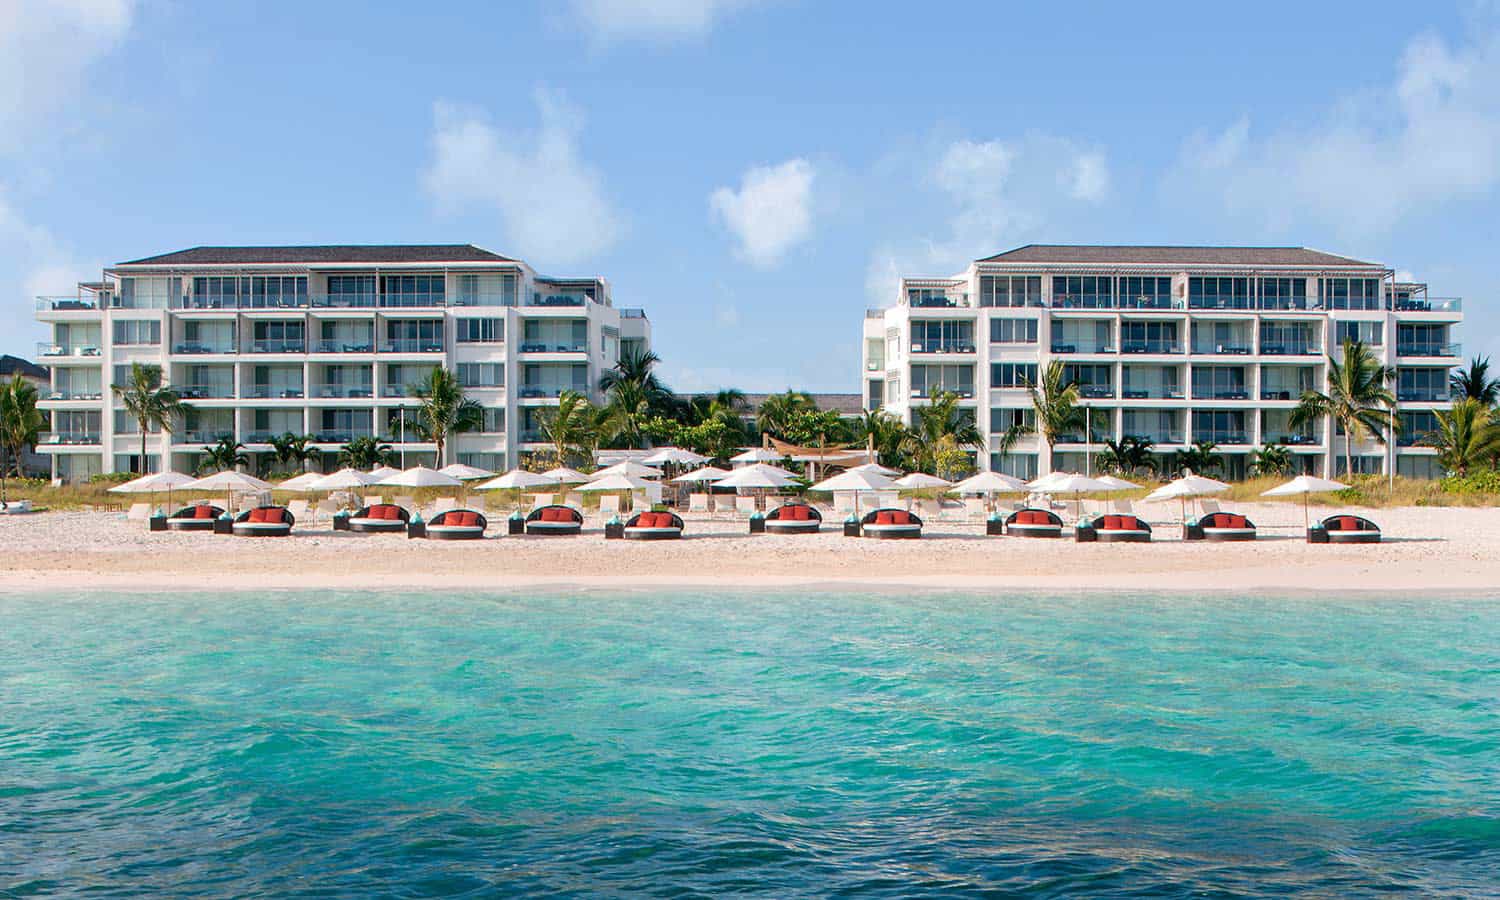 Gansevoort Turks & Caicos Hotel, Beach and Ocean View